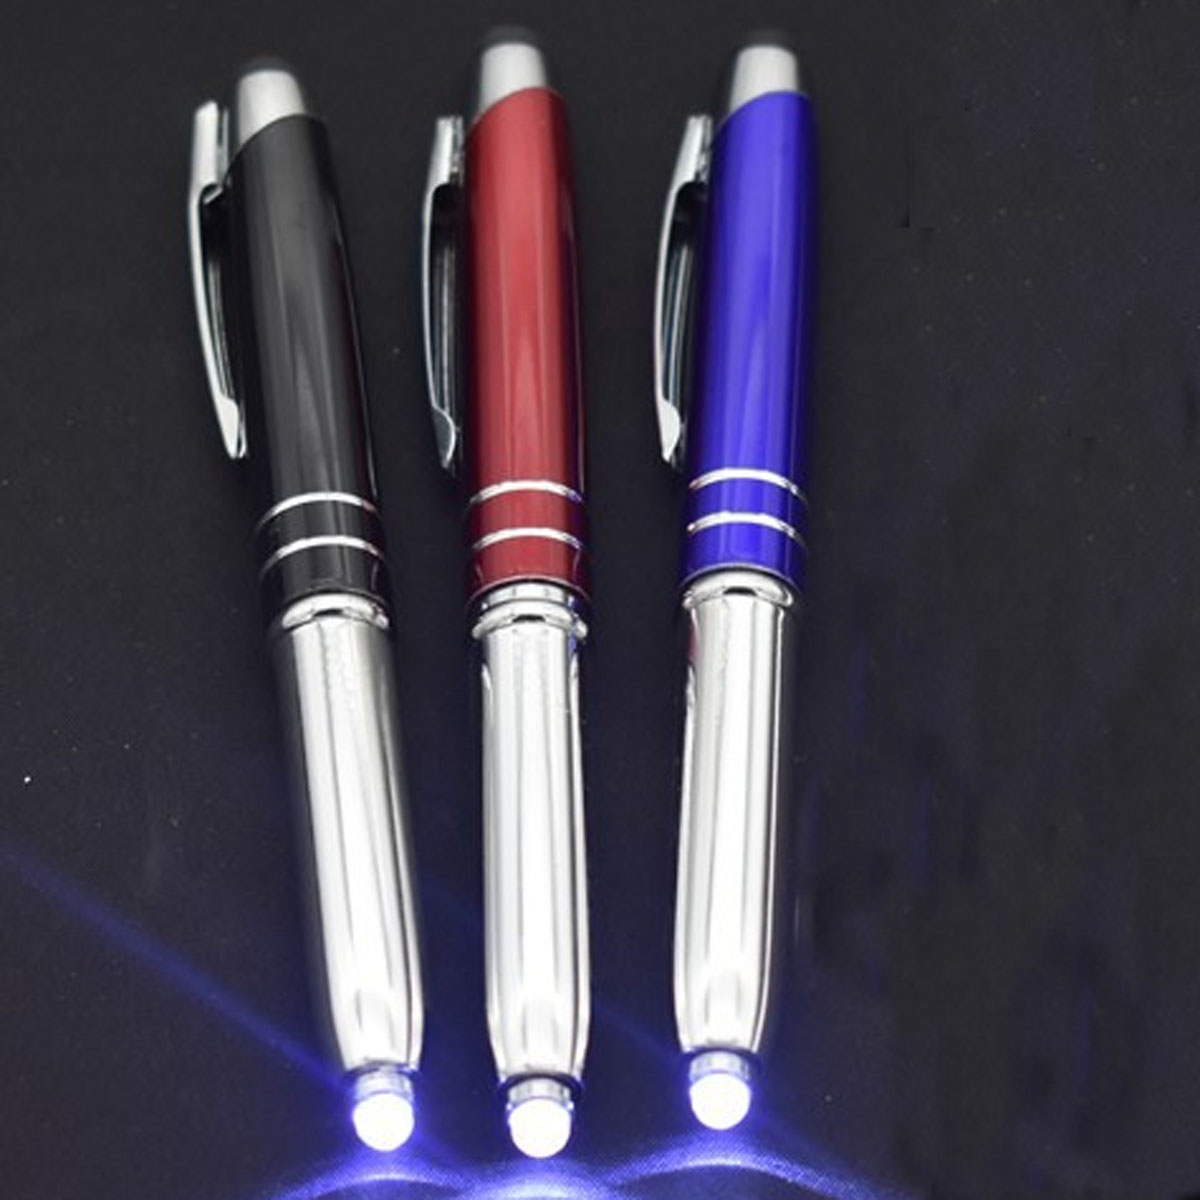 GL-AAD1061 Stylus Metal Pen with LED Light